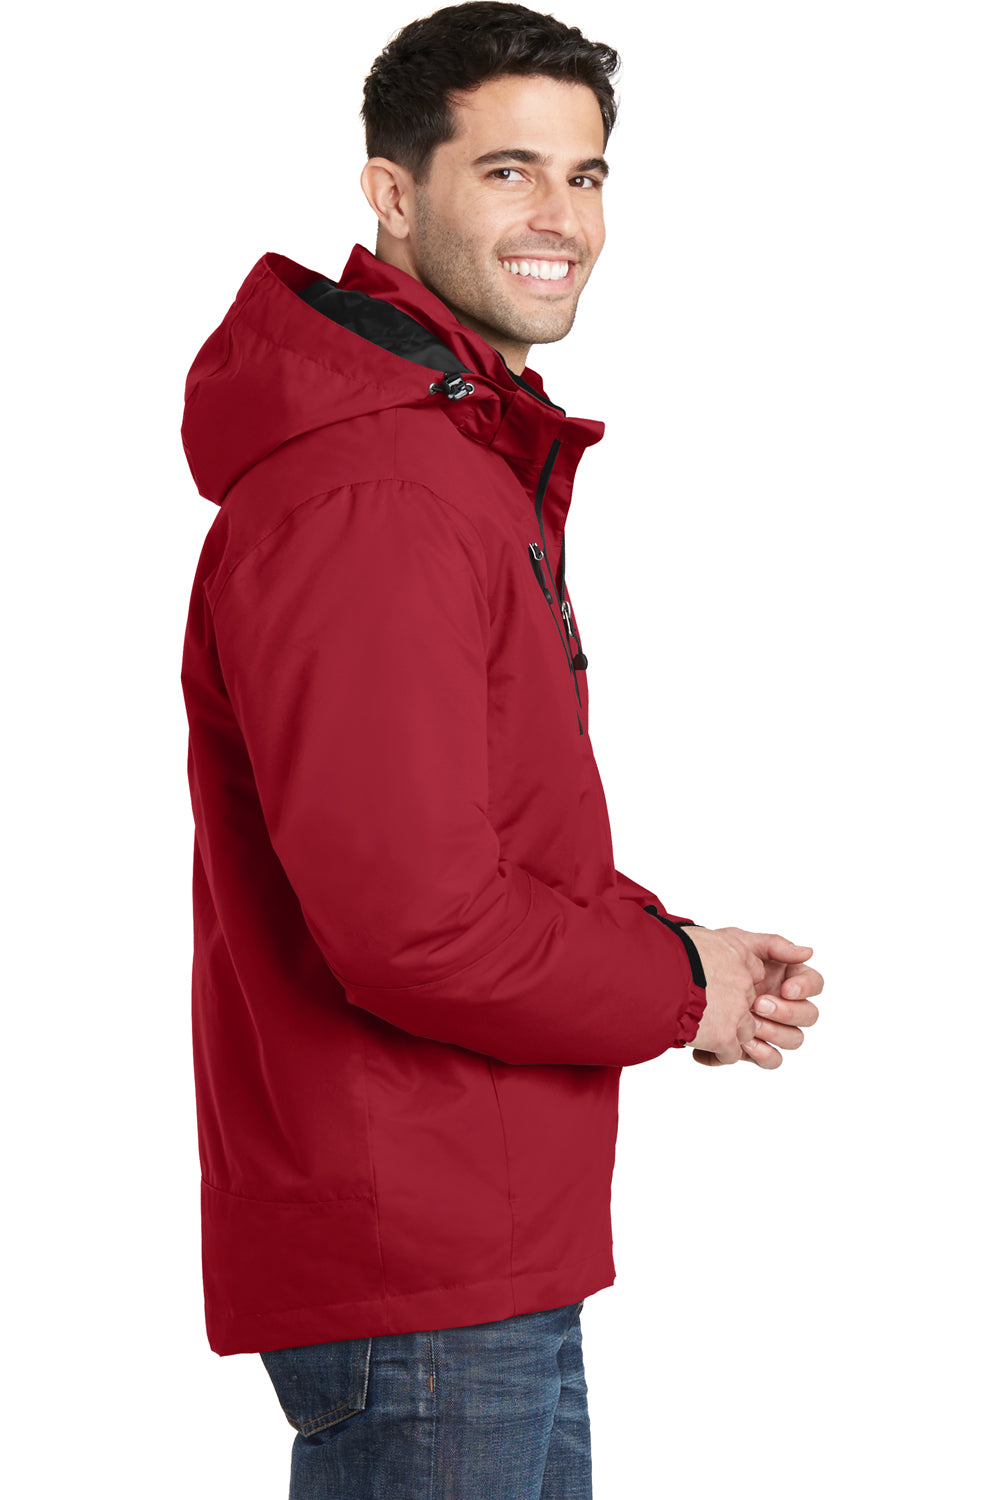 Port Authority J332 Mens Vortex 3-in-1 Waterproof Full Zip Hooded Jacket Red/Black Side